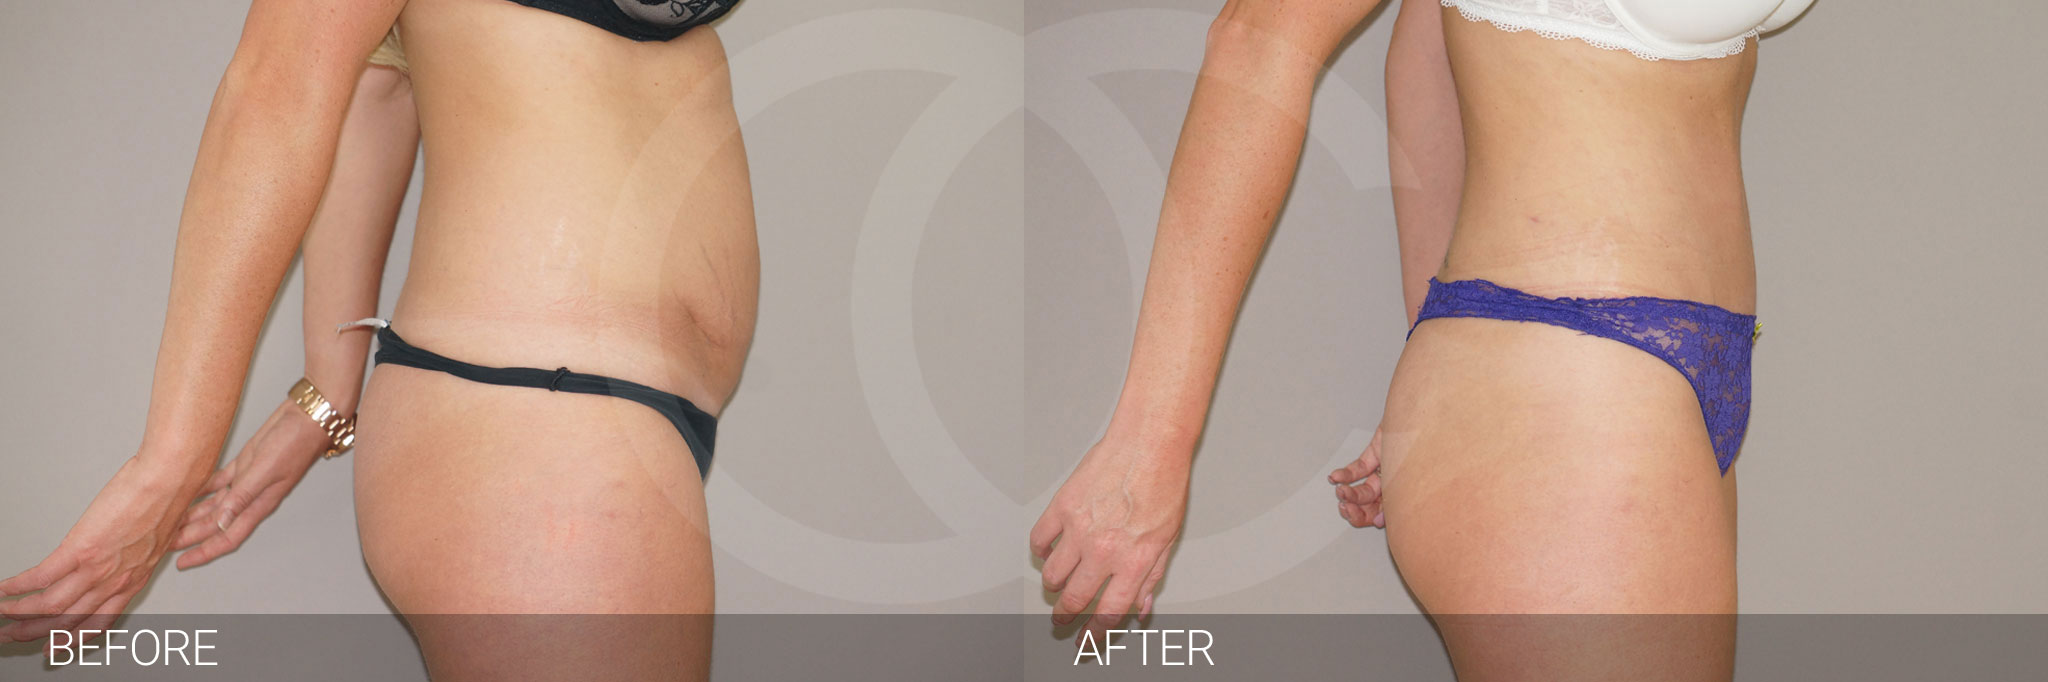 Antes y después Abdominoplastia reducción de abdomen fotos reales de pacientes 4.3 | Ocean Clinic Marbella Madrid